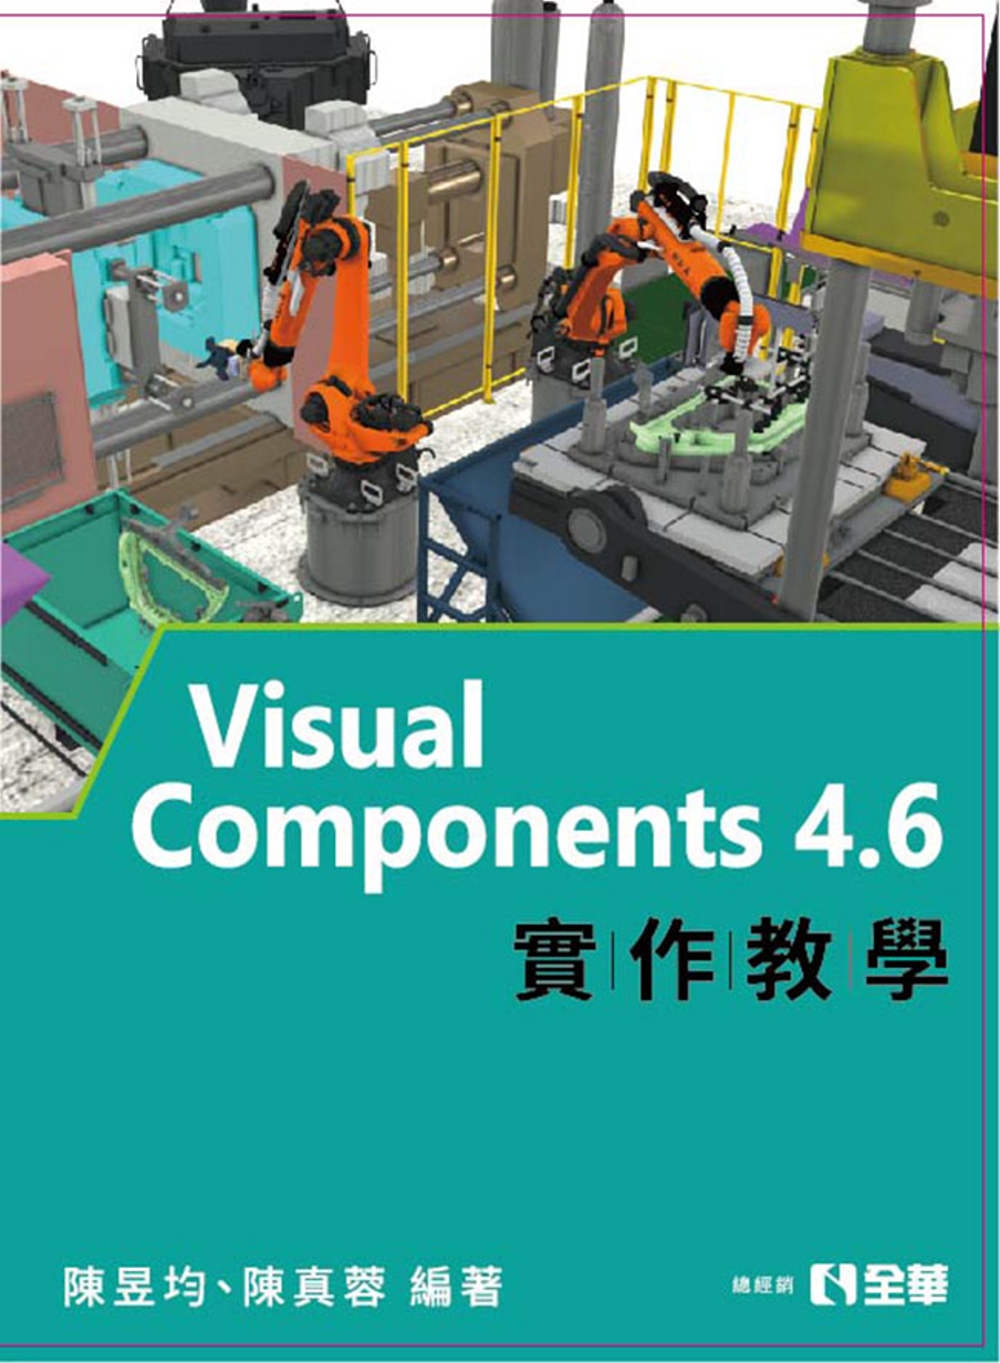 Visual Components 4.6實作教學 